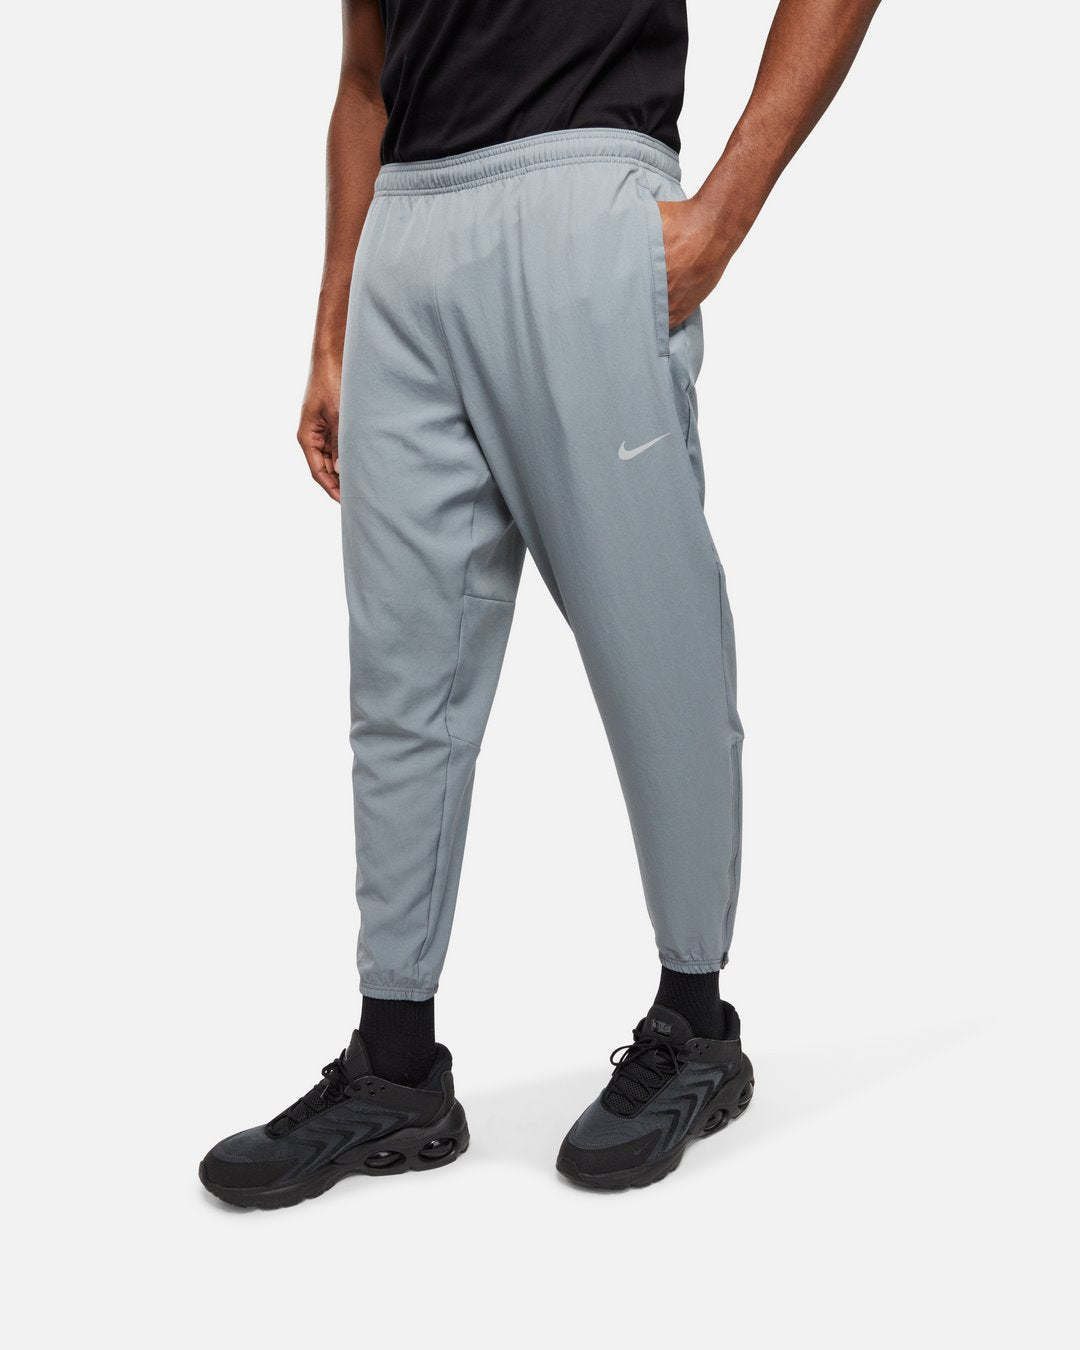 Pantalon Nike Challenger - Gris